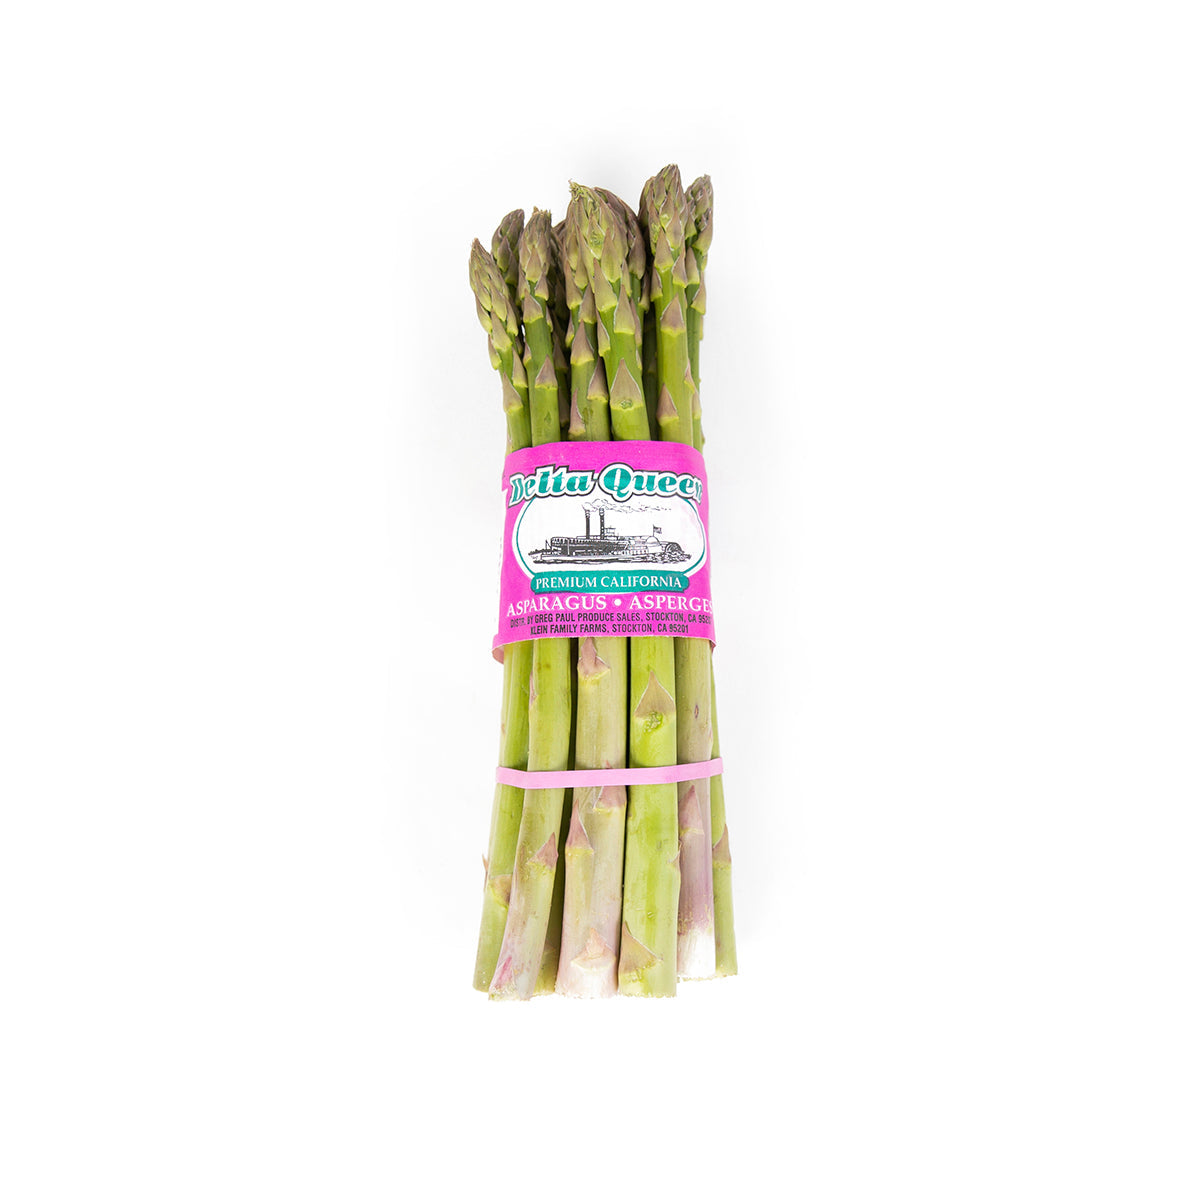 Delta Queen California Premium Large Asparagus 11 lb